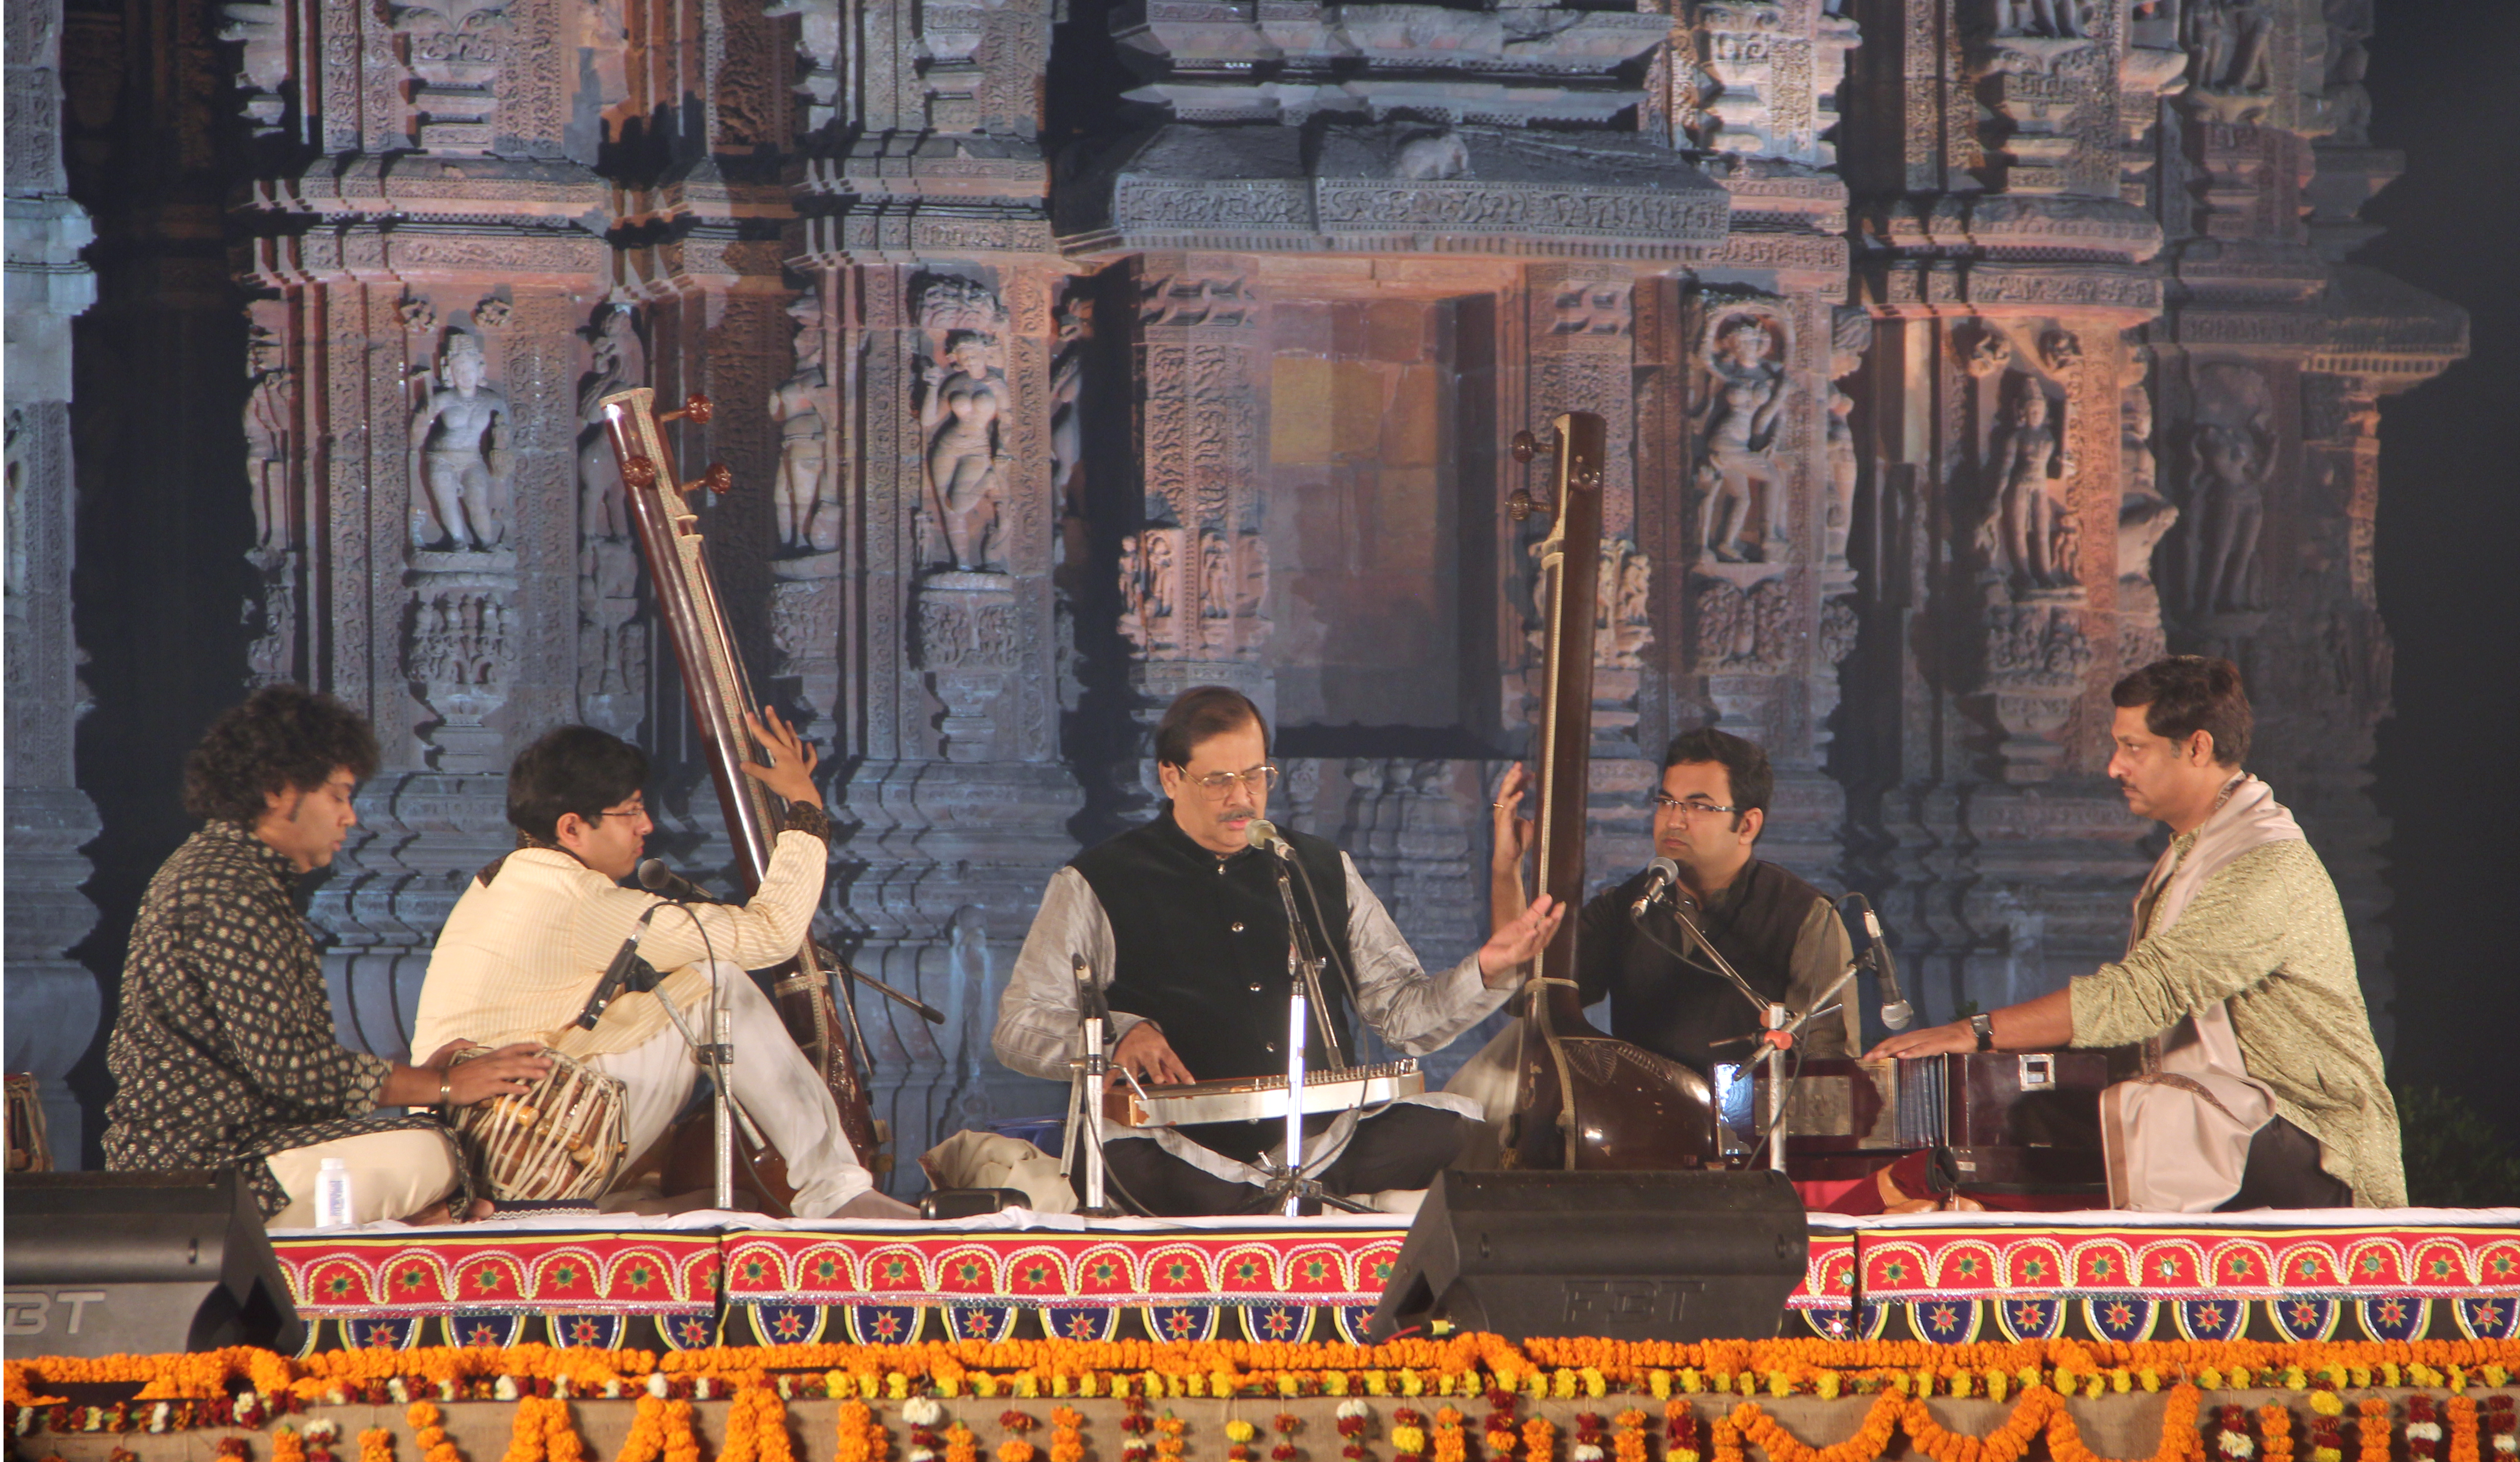 Les instruments de musique de l'Inde, les instruments à cordes